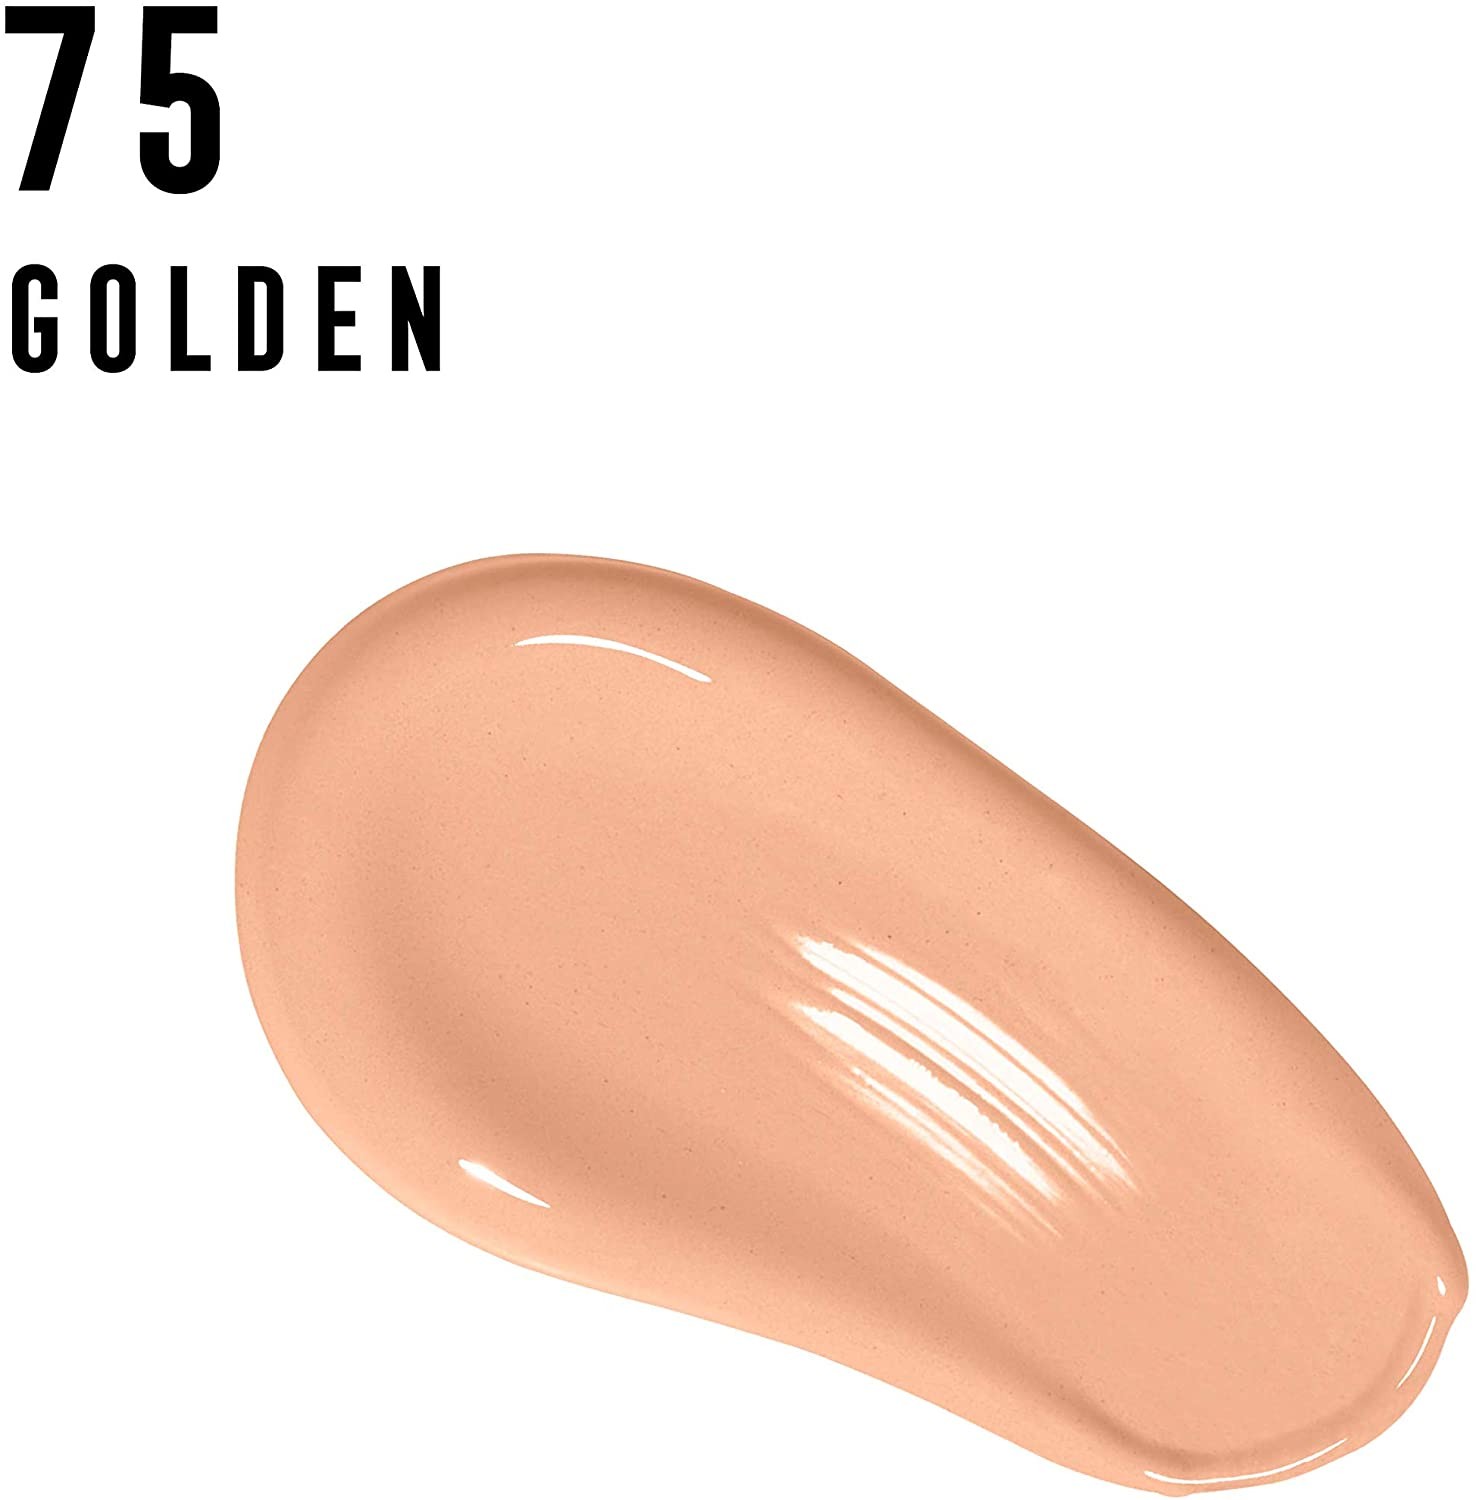 Golden 75